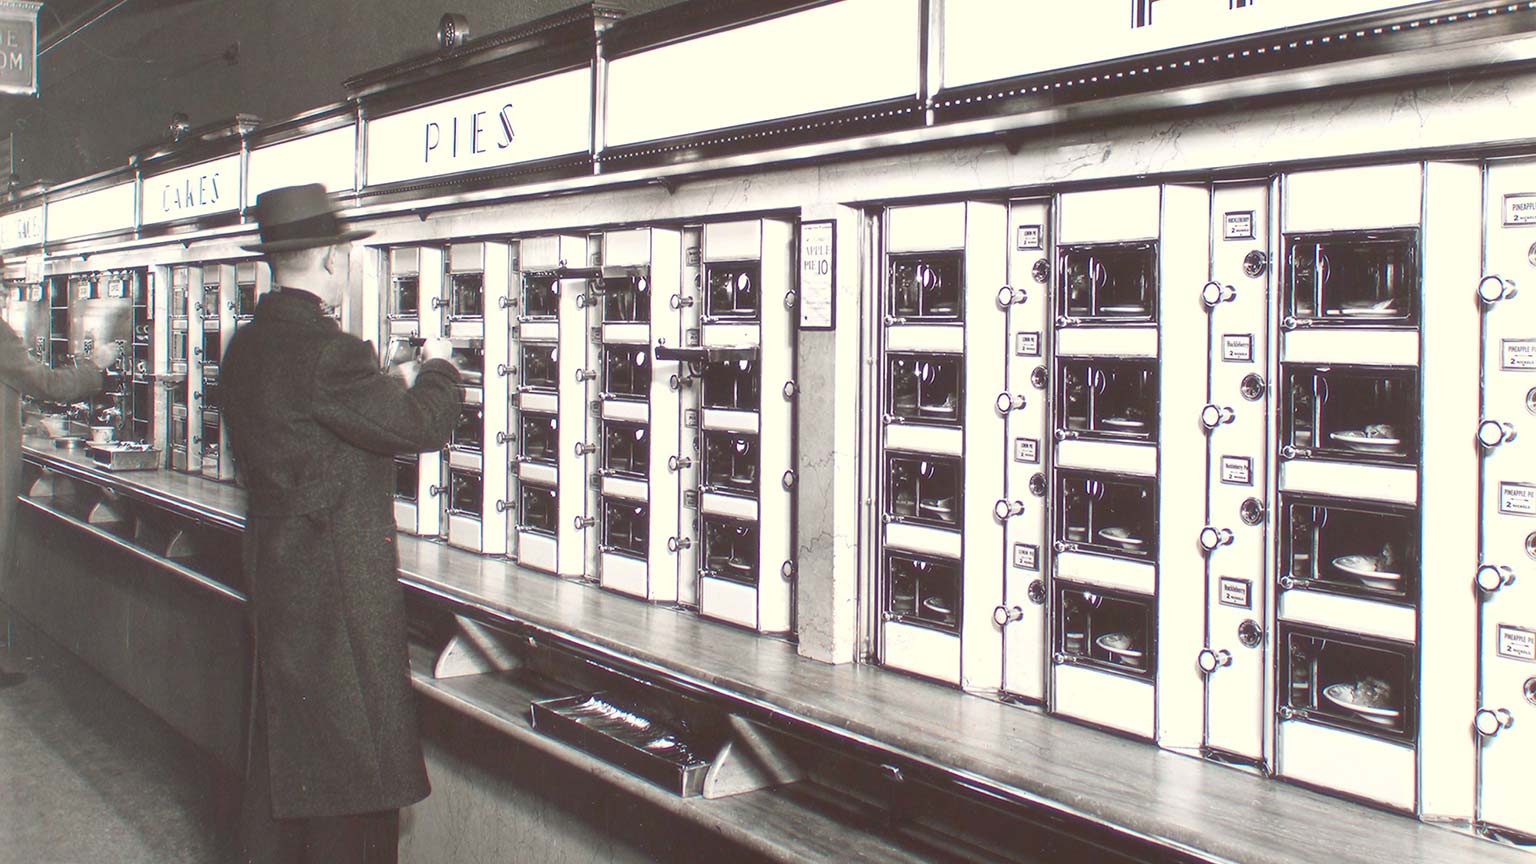 A man standing at an automat